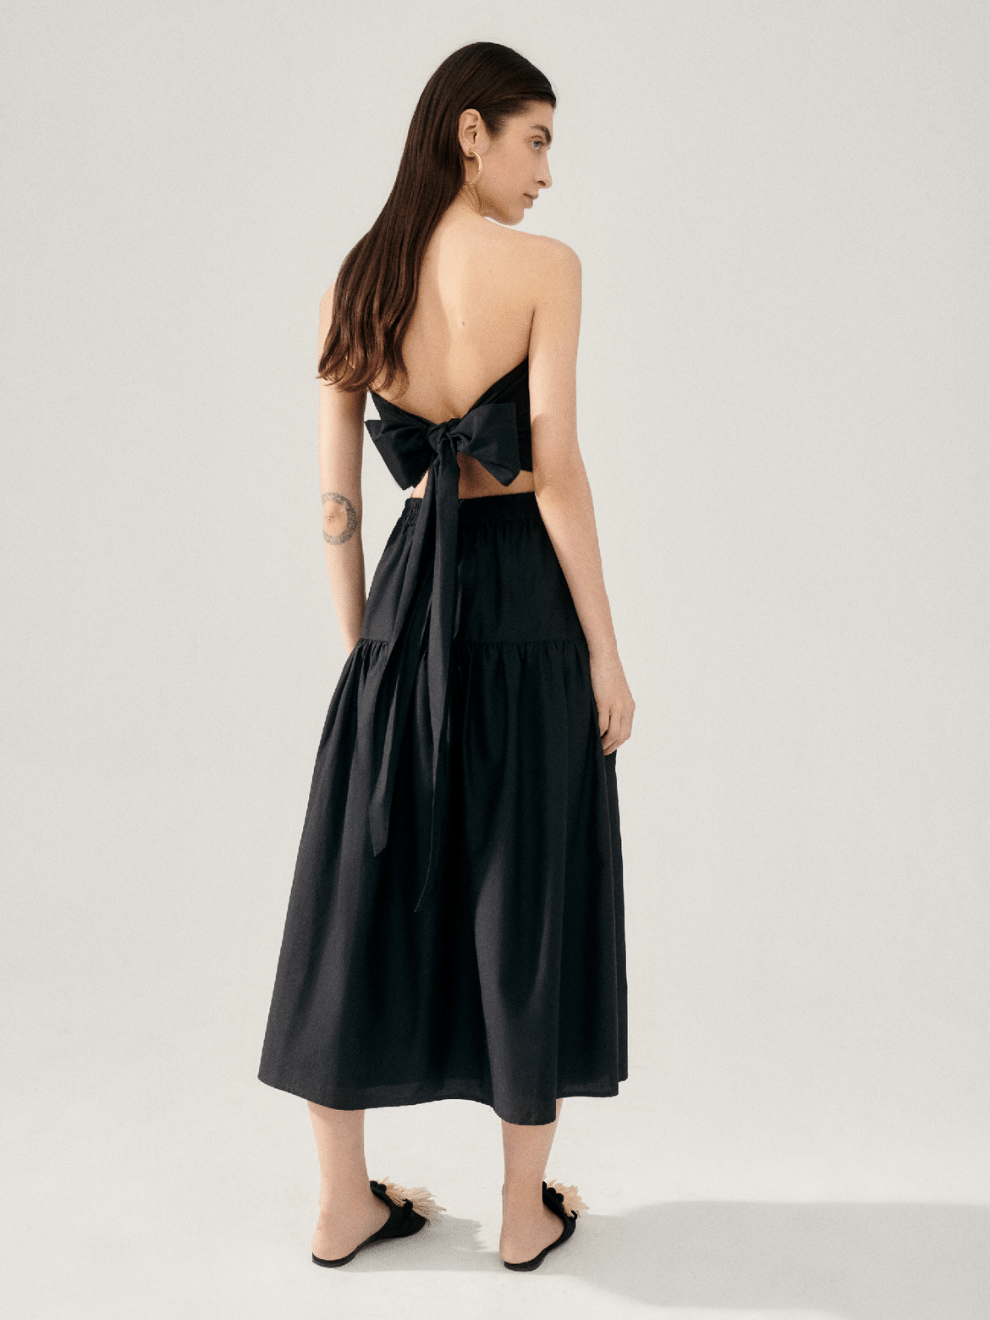 Cotton Silk 80's Skirt in Black